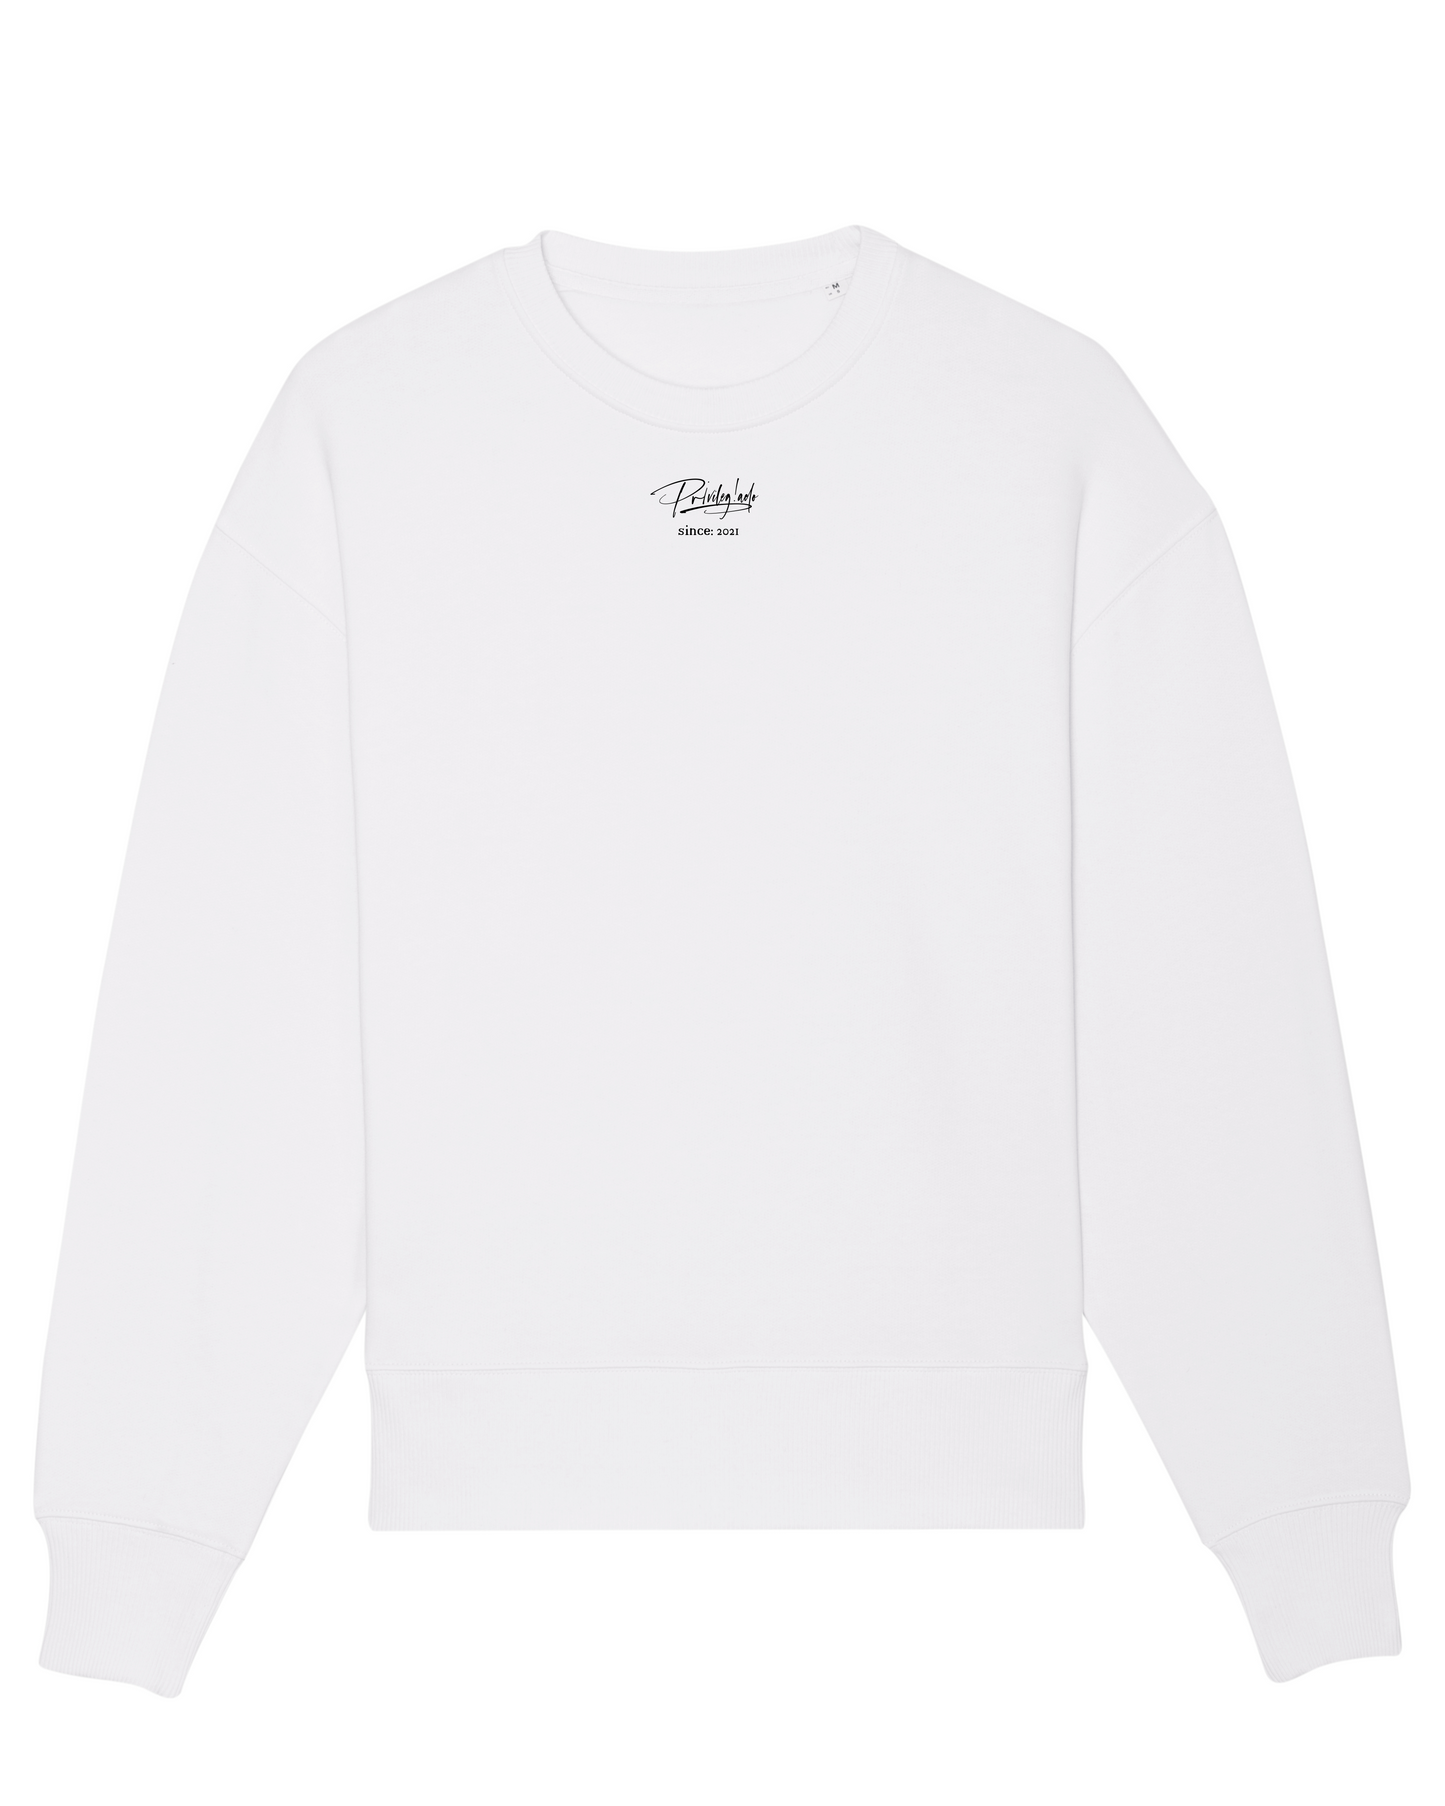 Since 2021 - oversize Sweatshirt